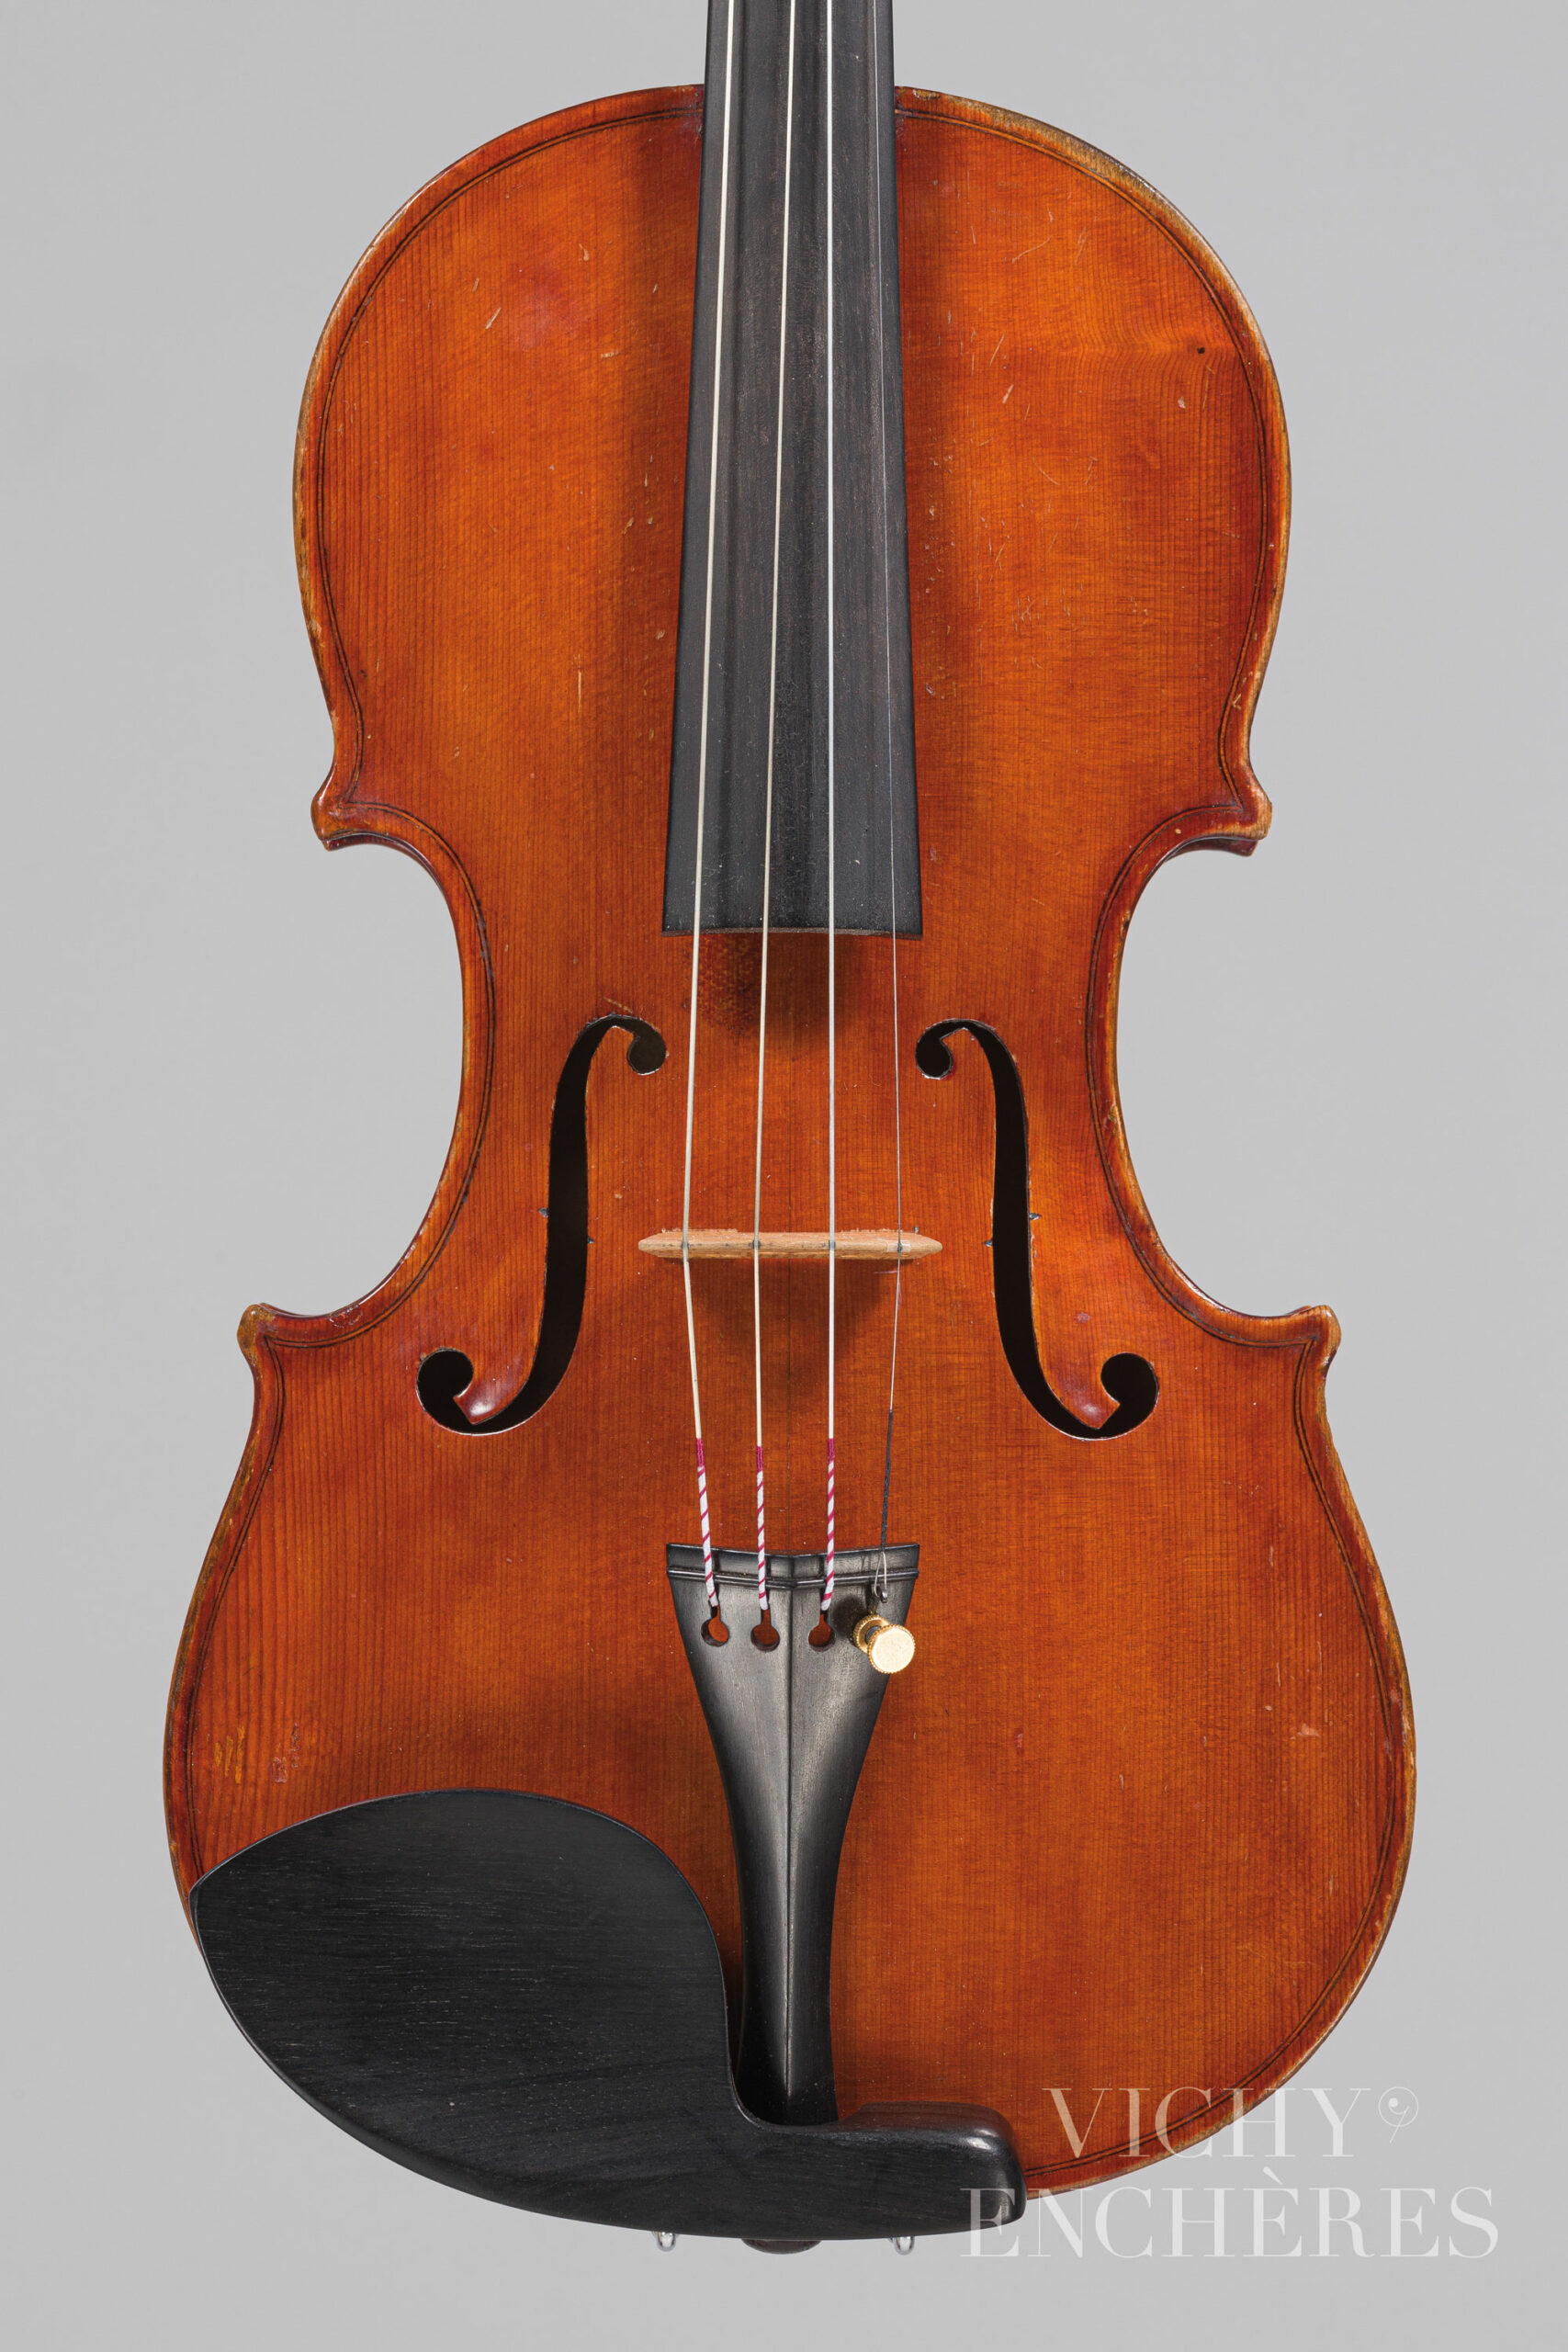 Violon de Vincenzo SANNINO Instrument mis en vente par Vichy Enchères le 1er décembre 2022 © Christophe Darbelet